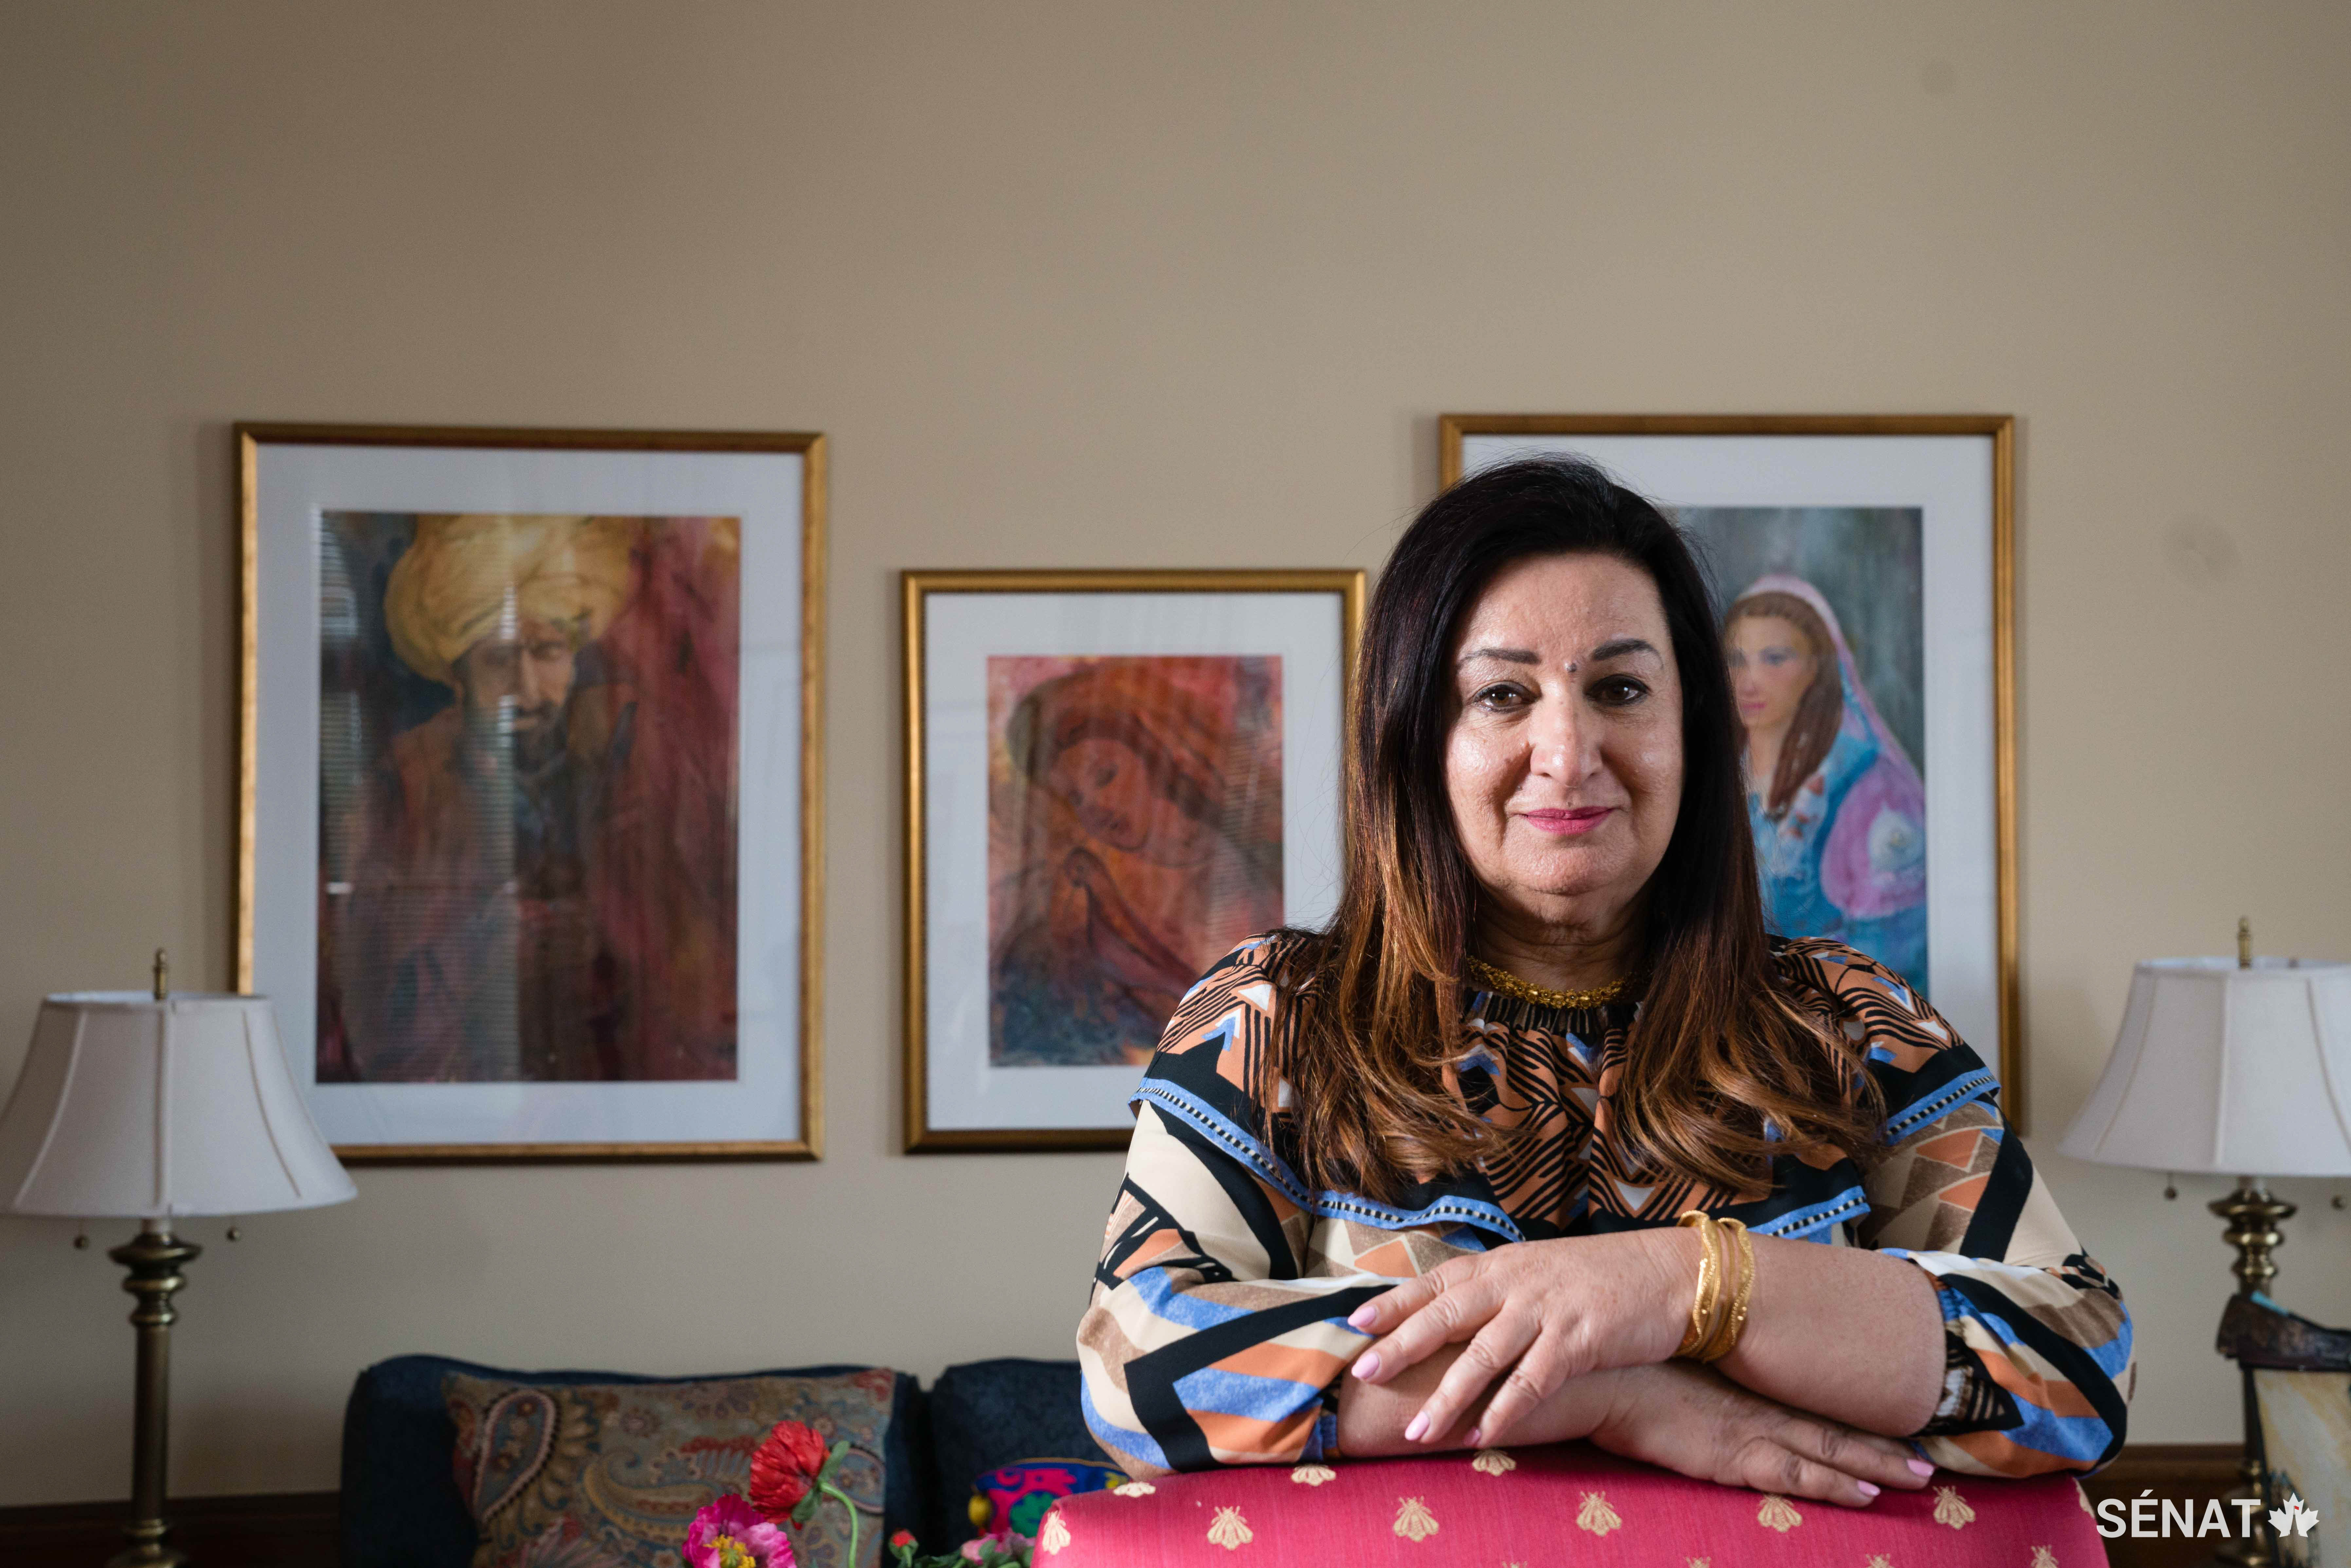 La sénatrice Salma Ataullahjan peint des scènes inspirées de ses voyages et de la littérature pakistanaise. Plusieurs de ses œuvres ornent son bureau de l’édifice de l’Est.